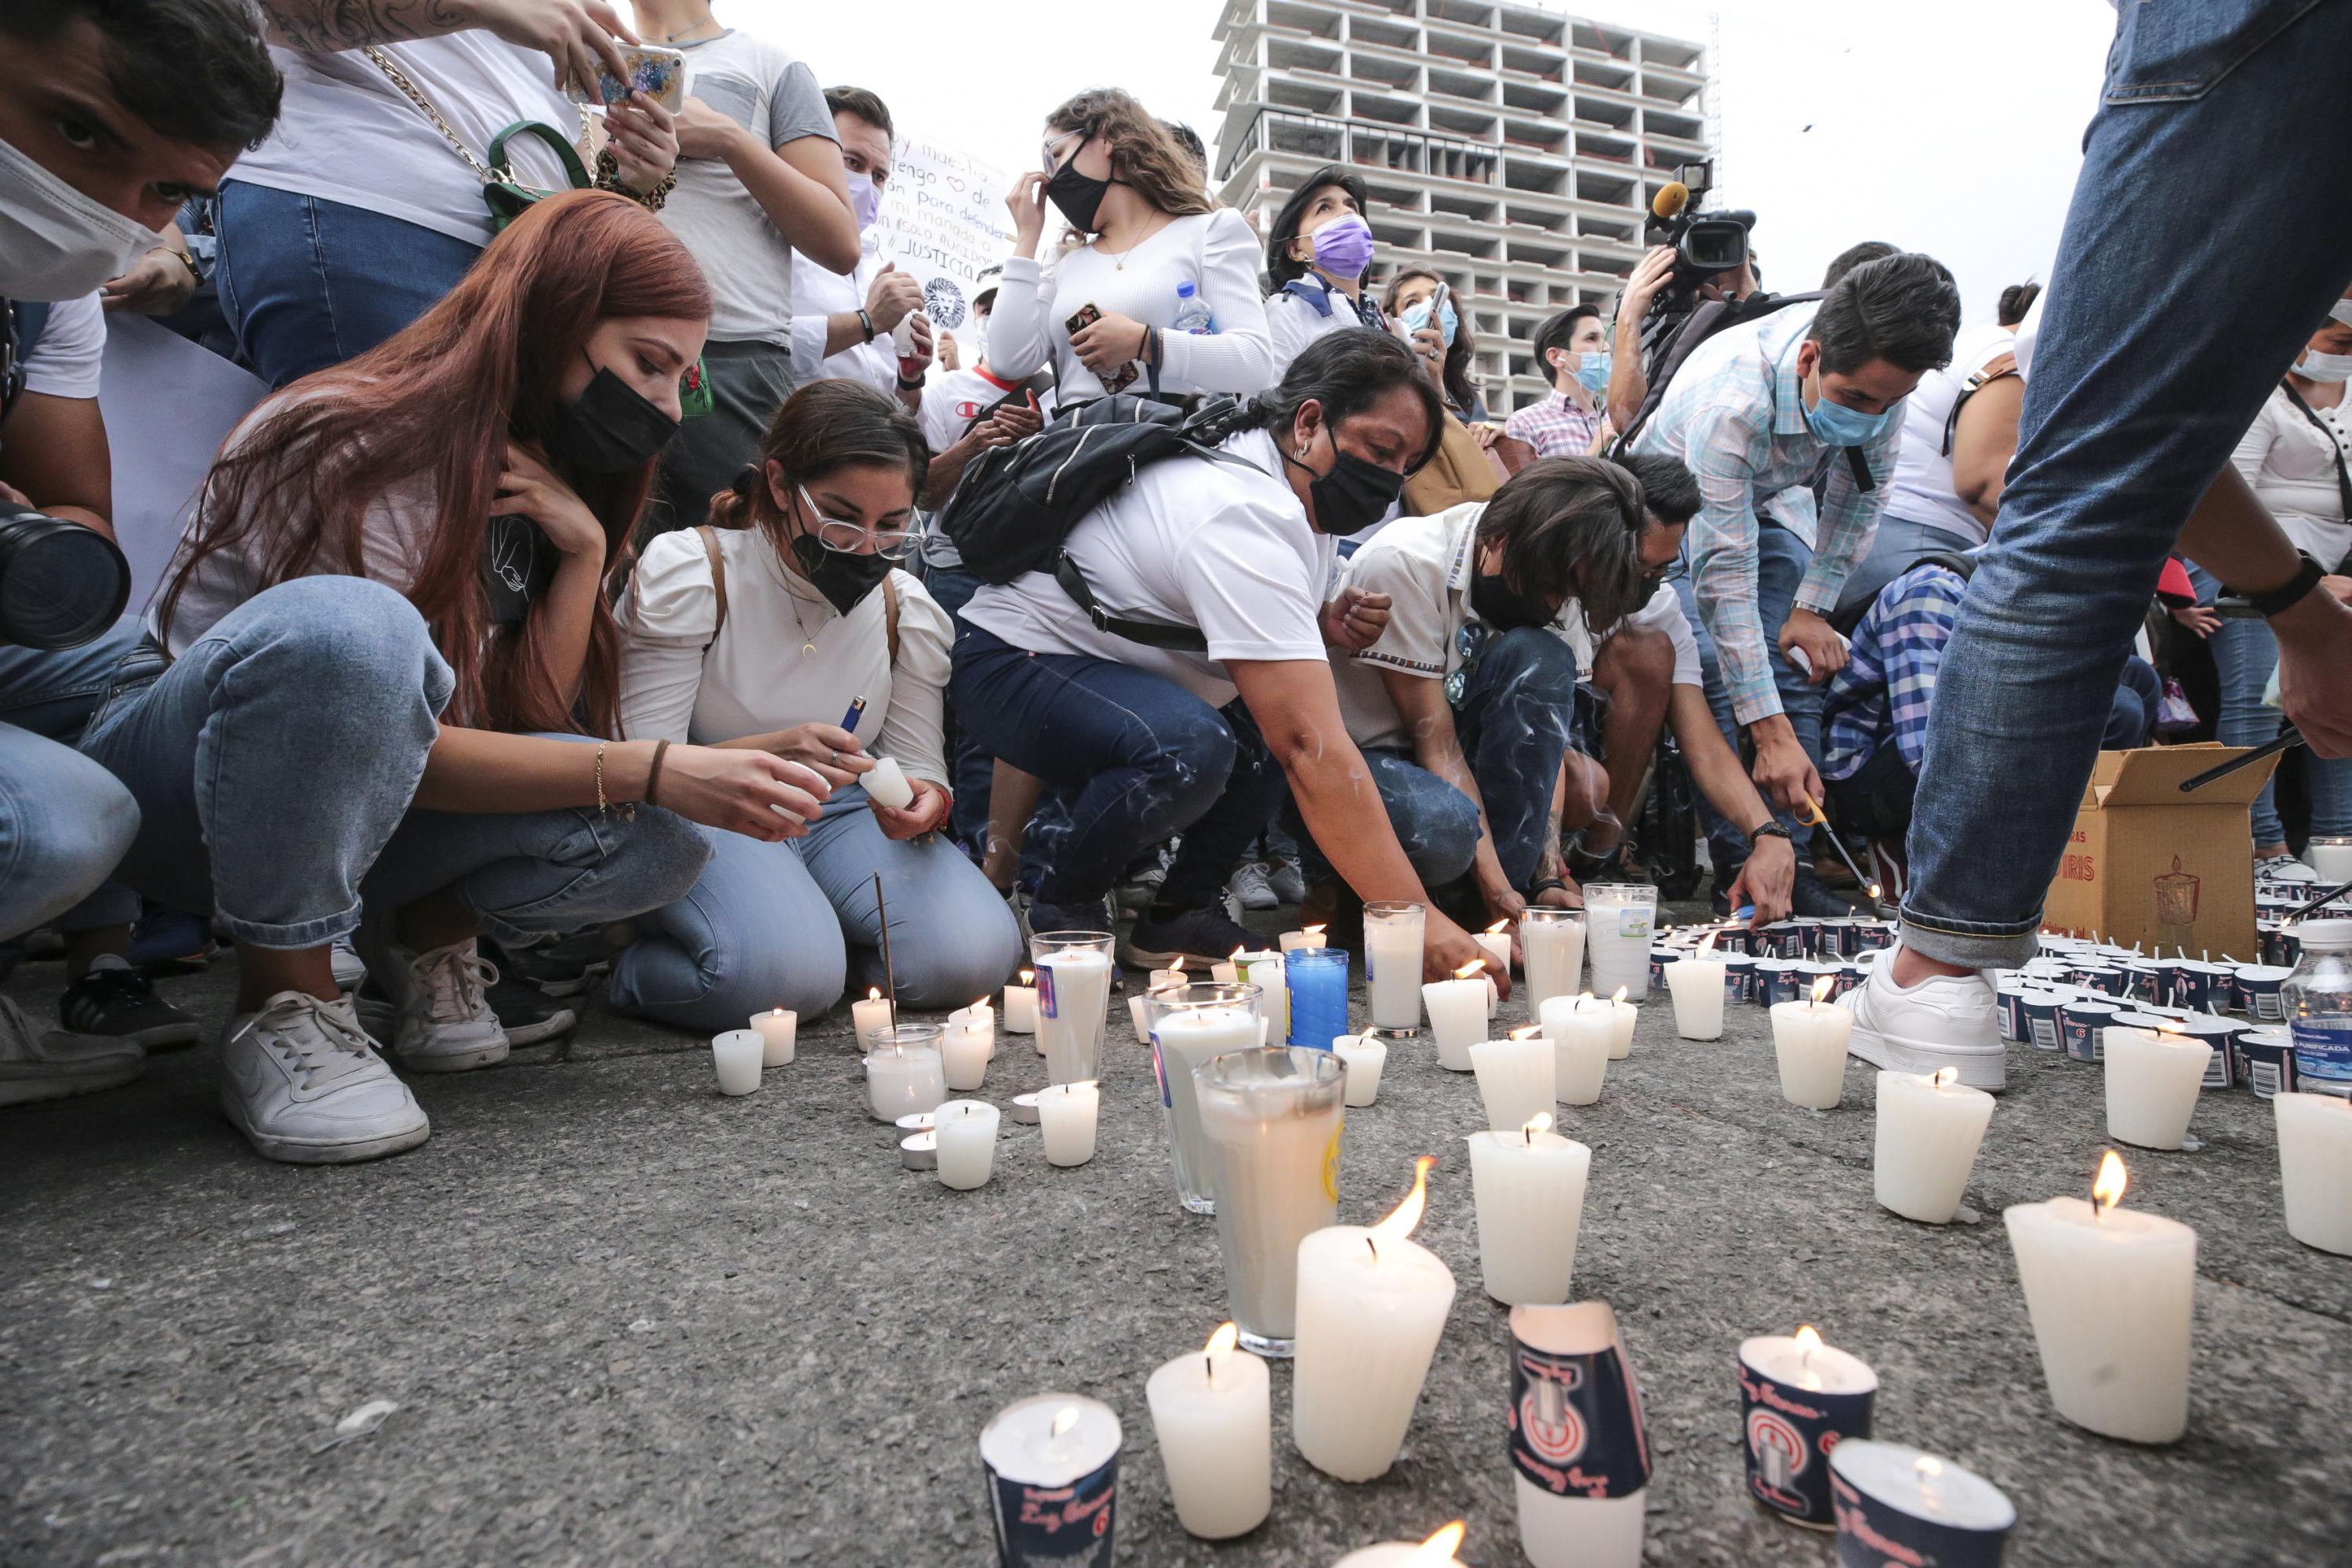 Claman más de diez mil universitarios paz y justicia: “¡No podemos acostumbrarnos a la oscuridad!”, sentencian